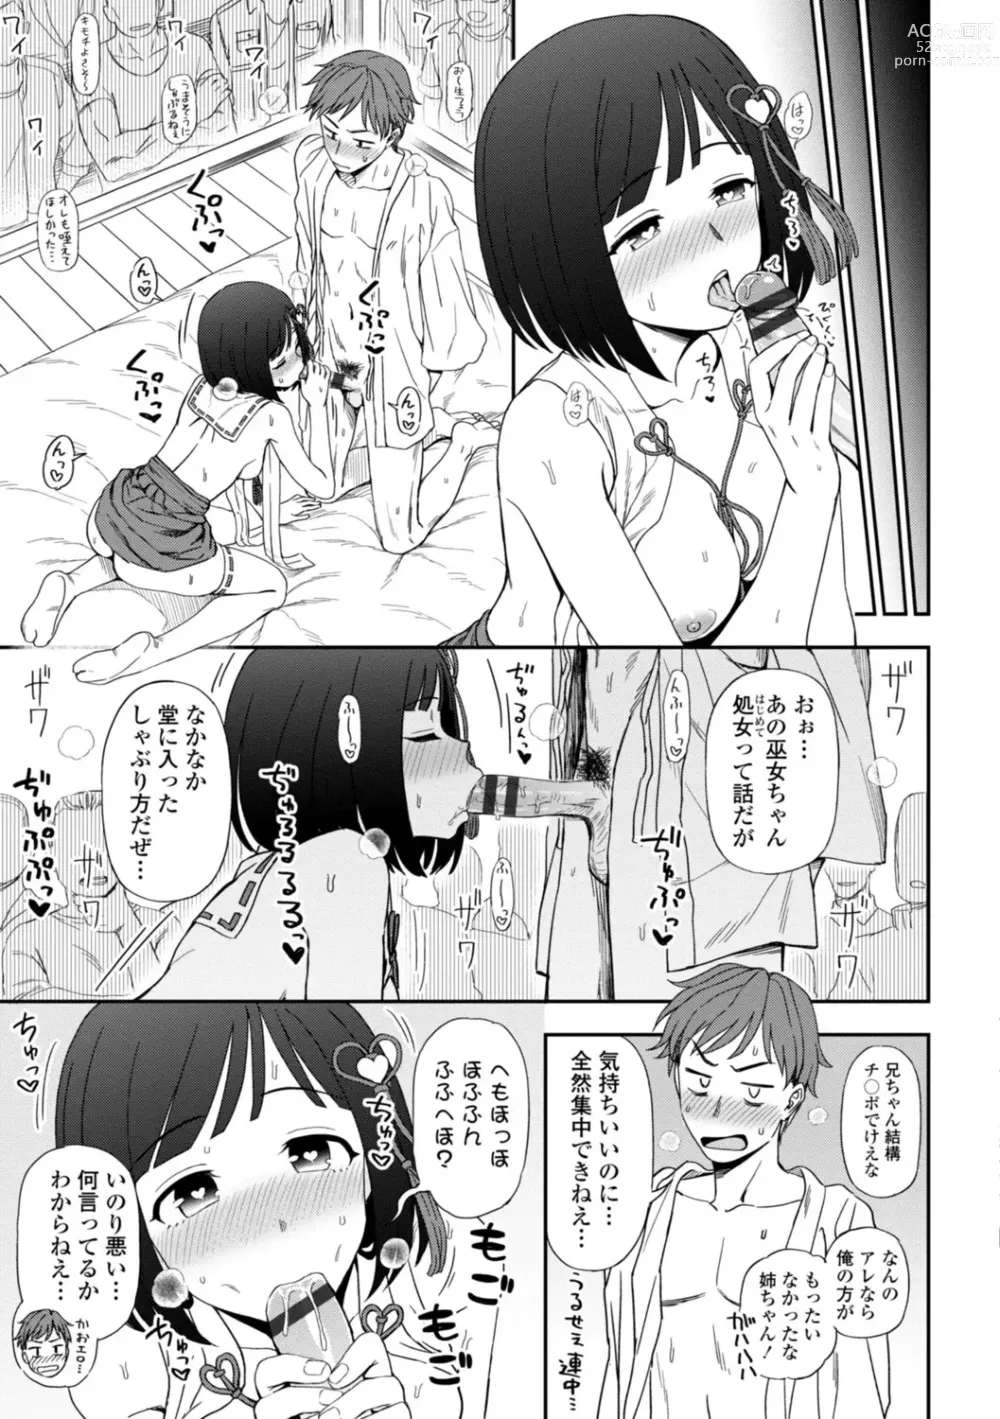 Page 17 of manga Watashi no Subete Sasagemasu - Ill give you all of mine.